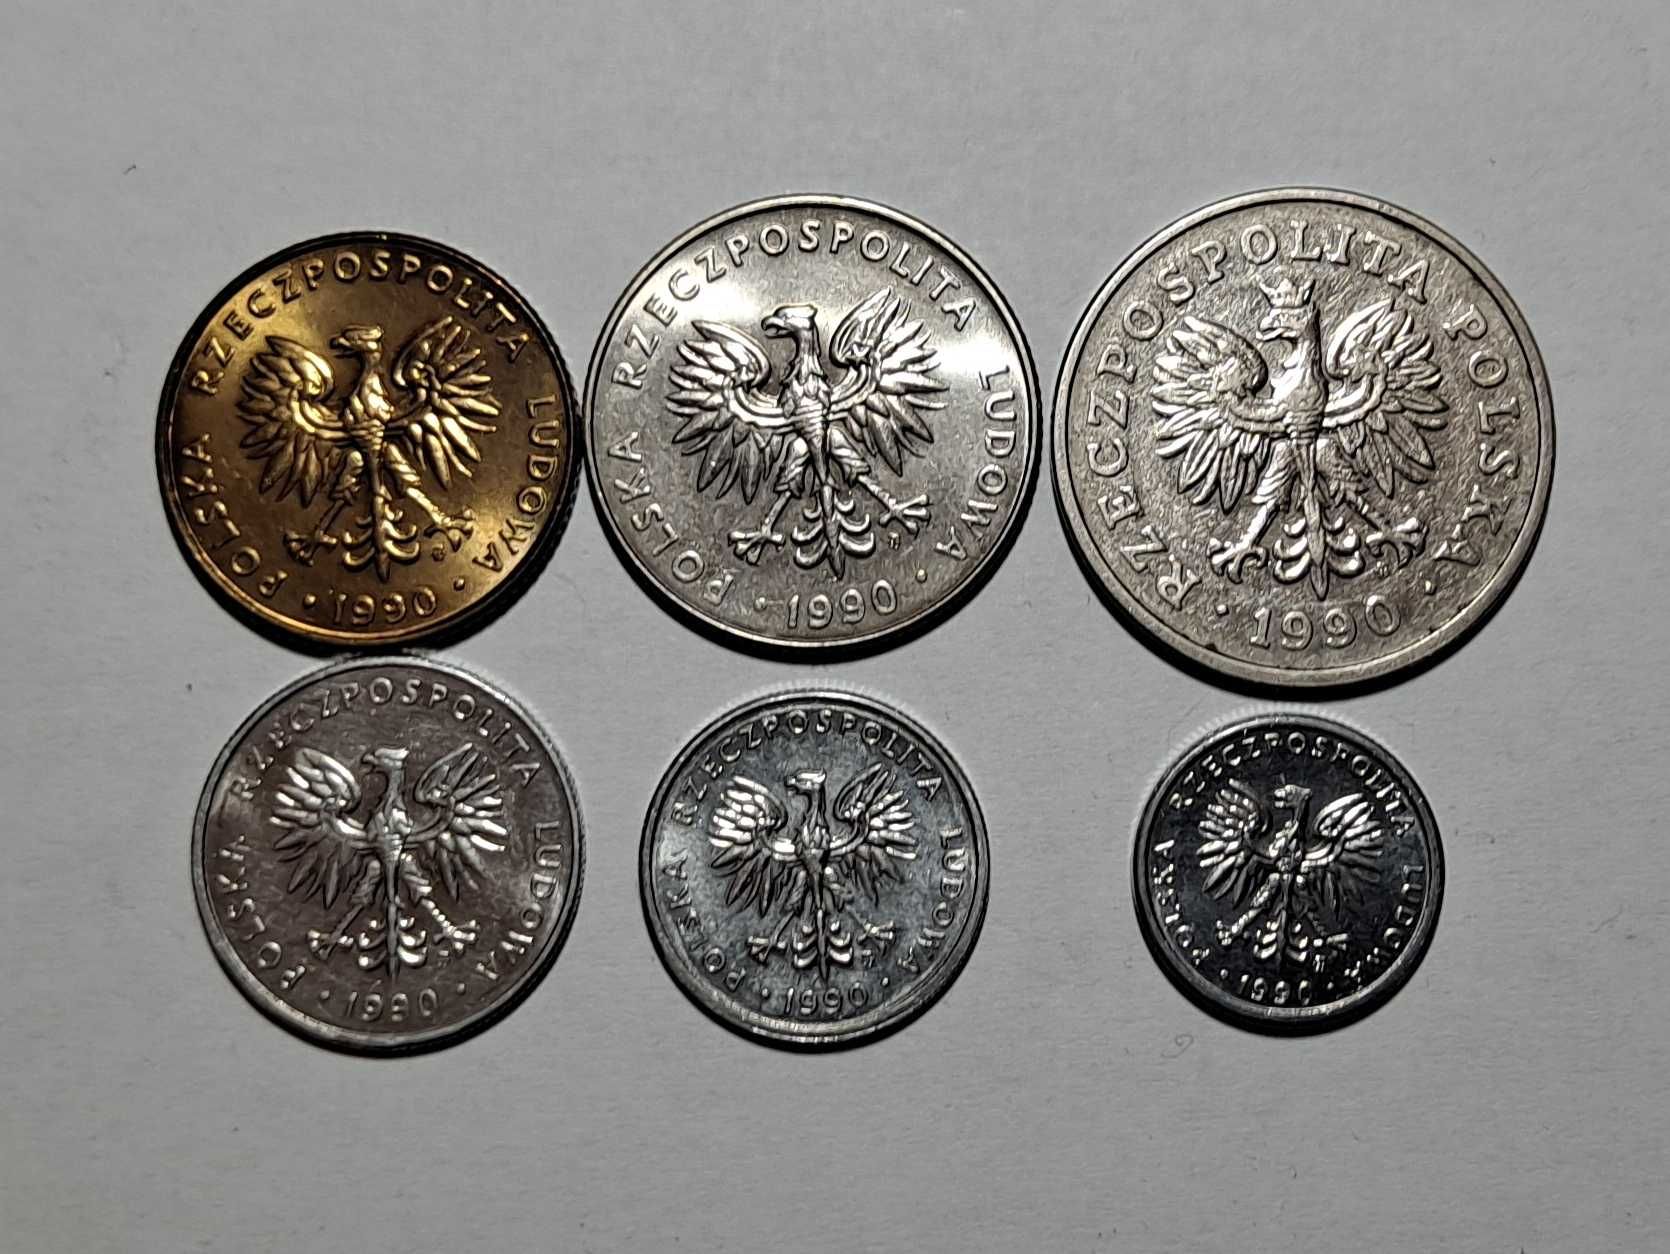 Monety - 1, 2, 5, 10, 20, 50 złotych - zestaw 6 szt. - z roku 1990